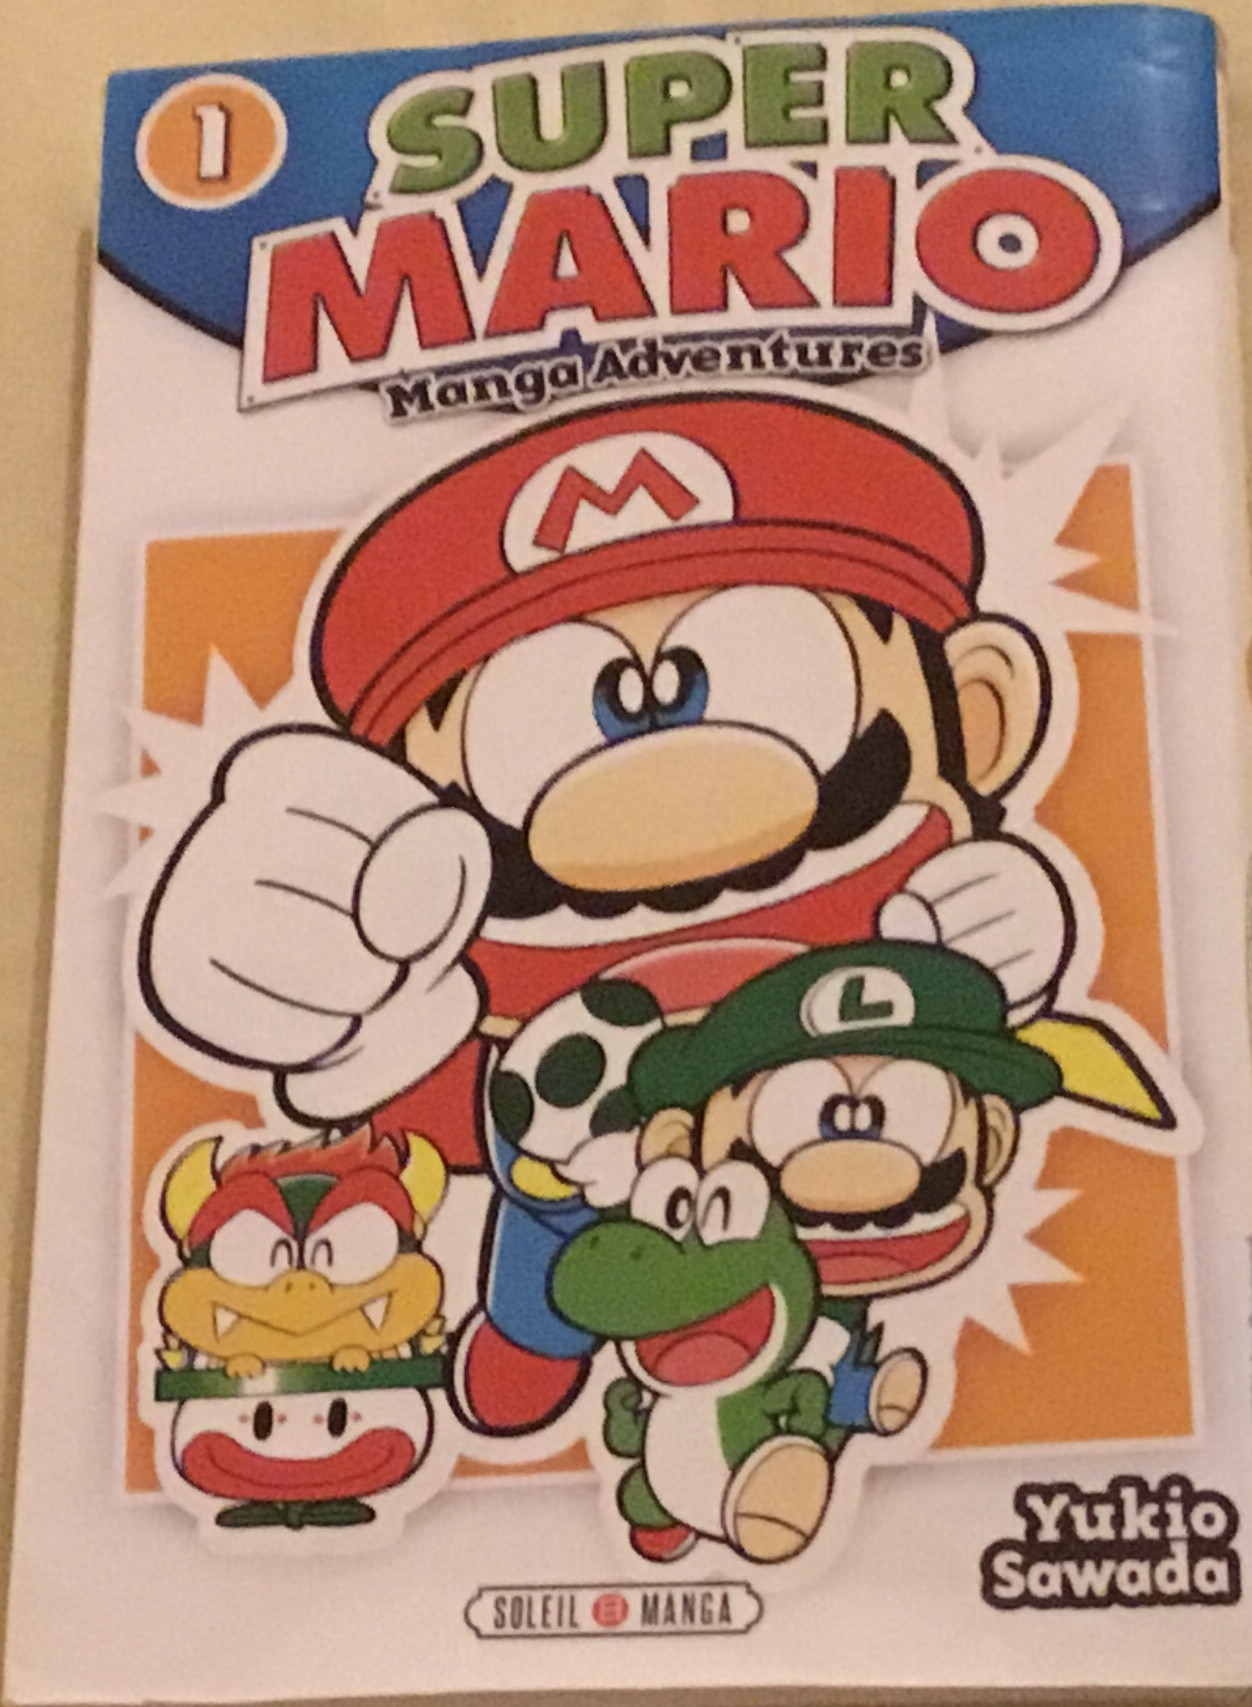 Super Mario manga adventures, tome 1